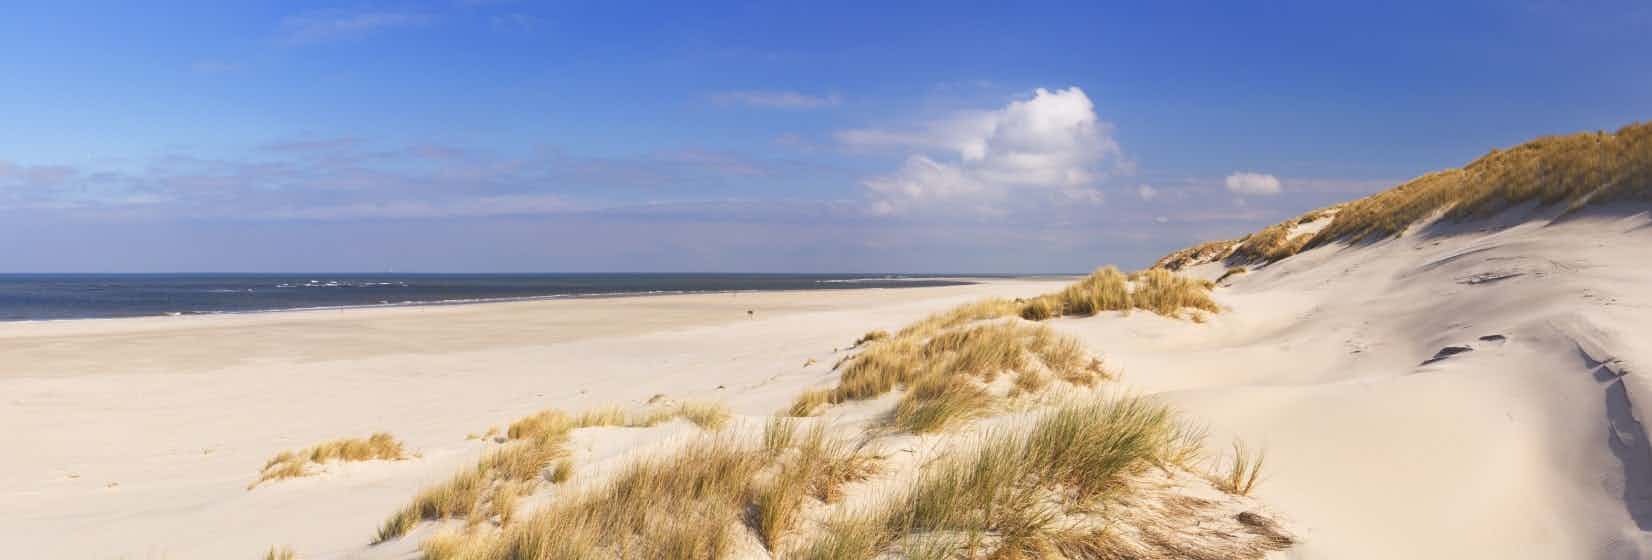 Campeggio al mare in Olanda